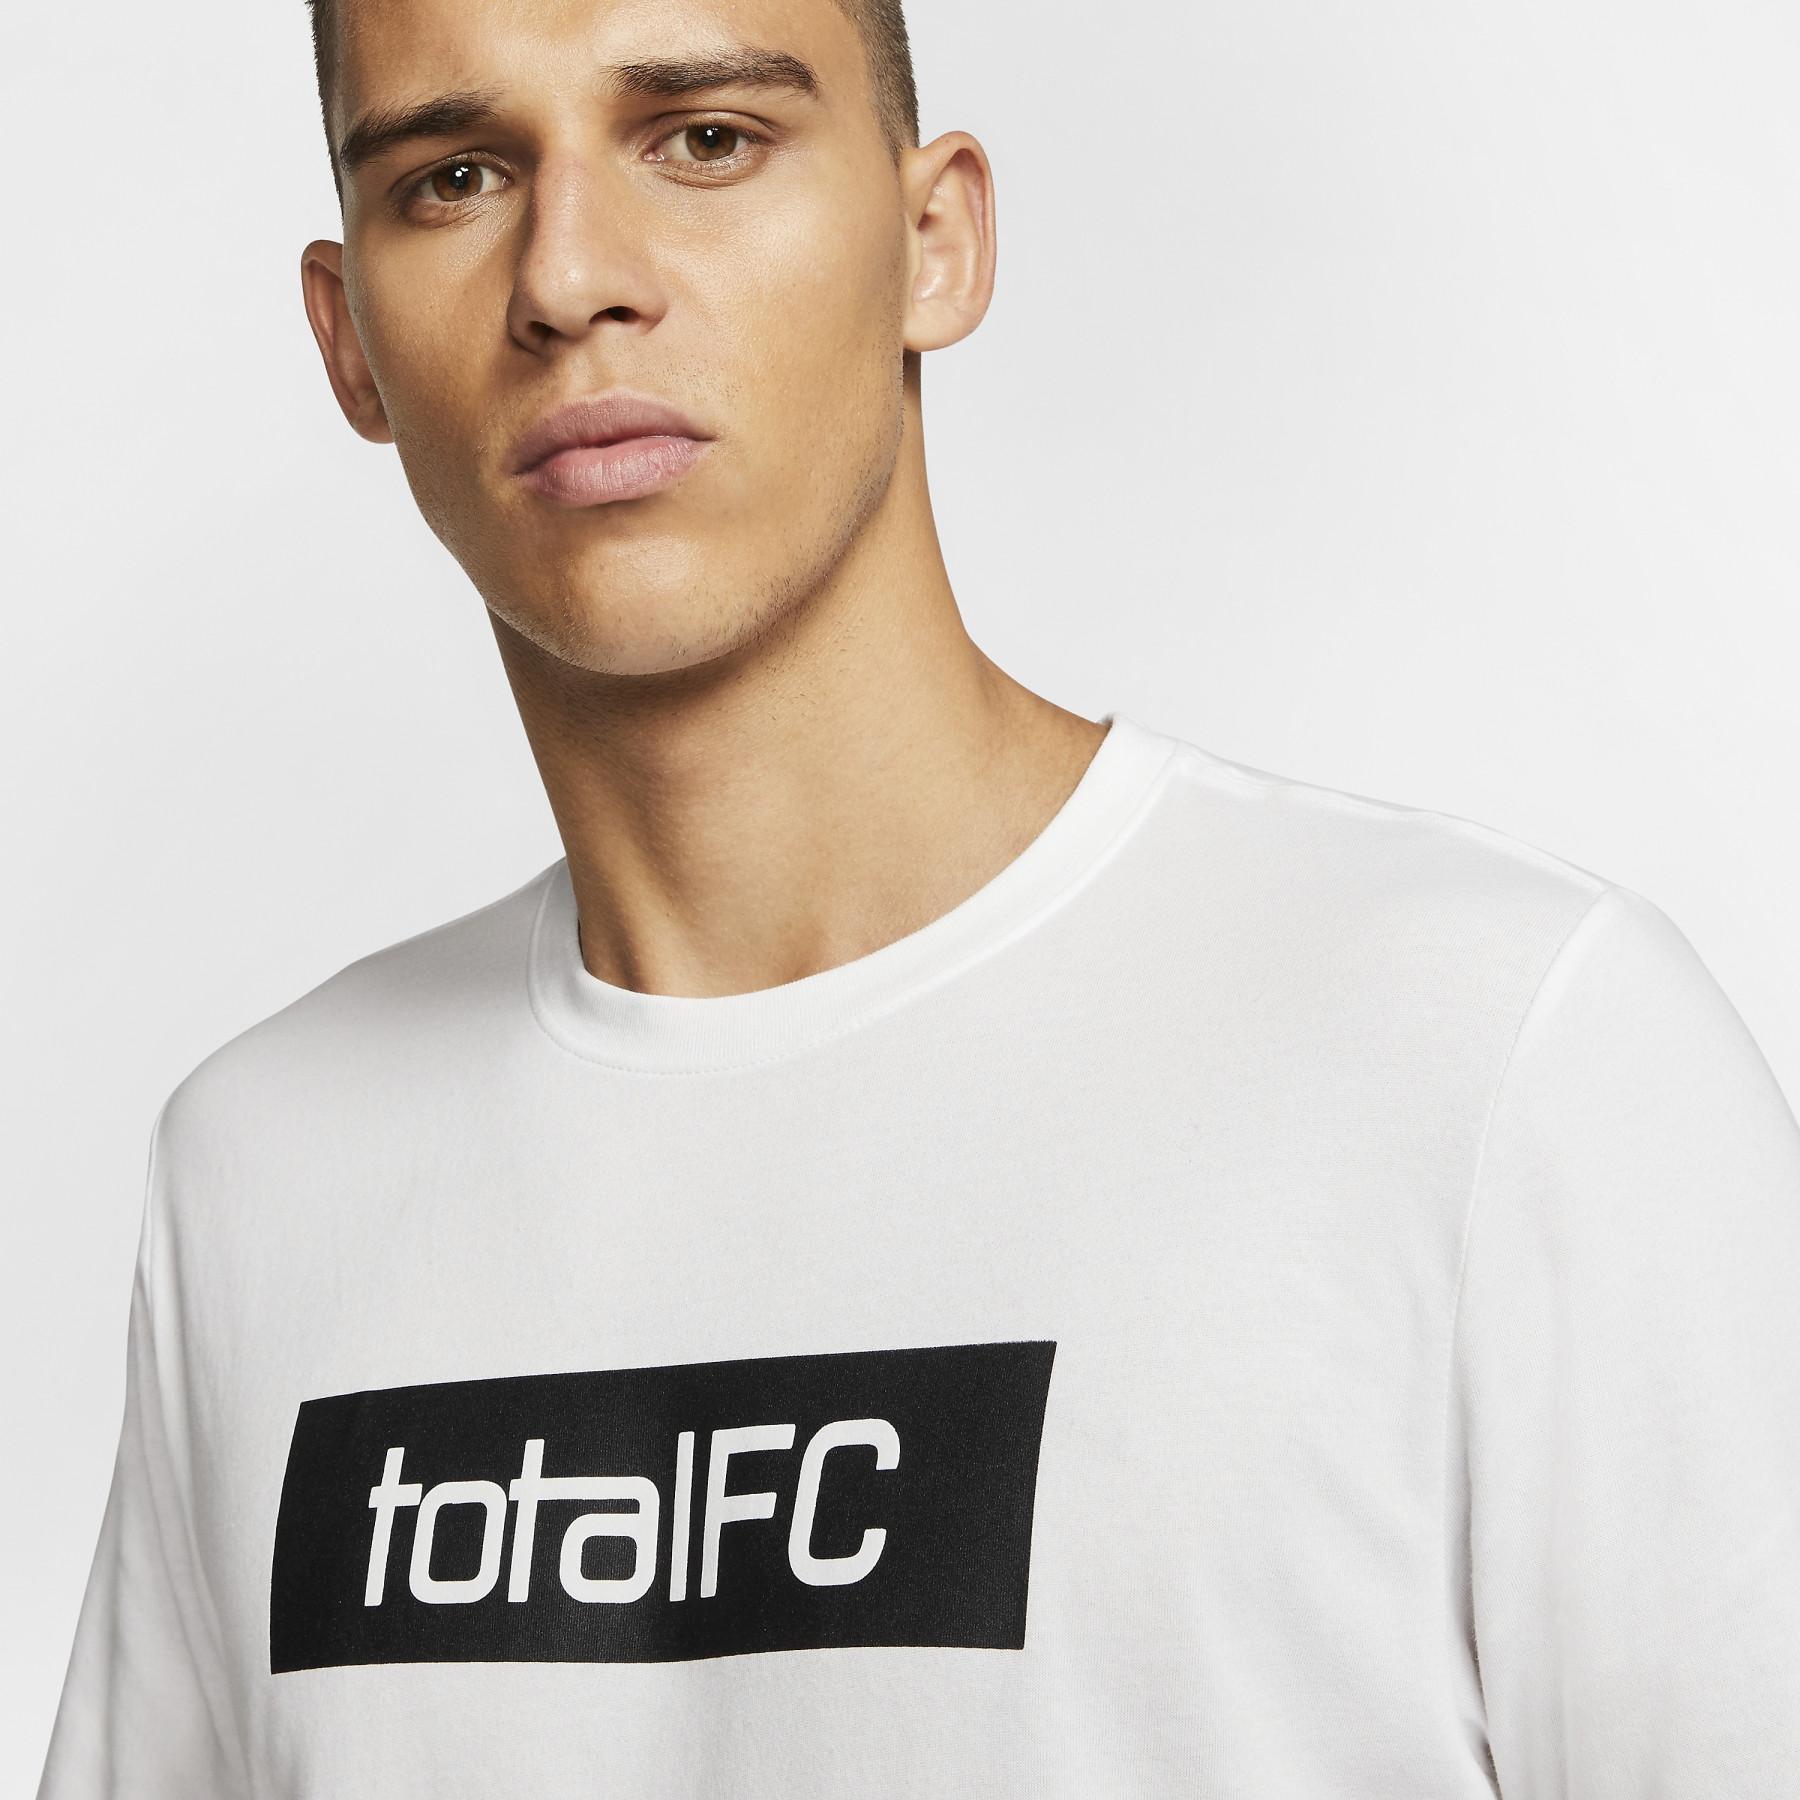 T-shirt Nike F.C. Dry